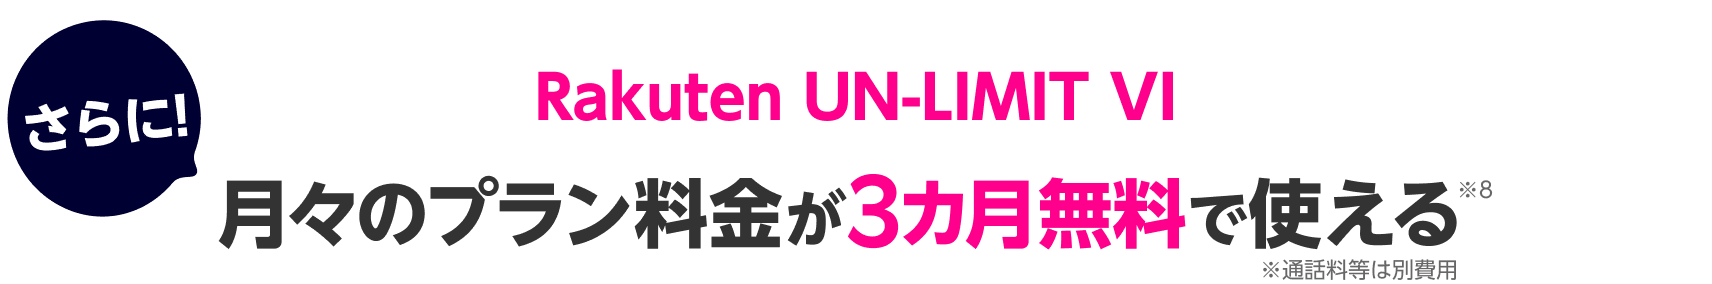 2021年4月1日、「Rakuten UN-LIMIT VI」にアップグレード いま申し込むとプラン料金が1年無料